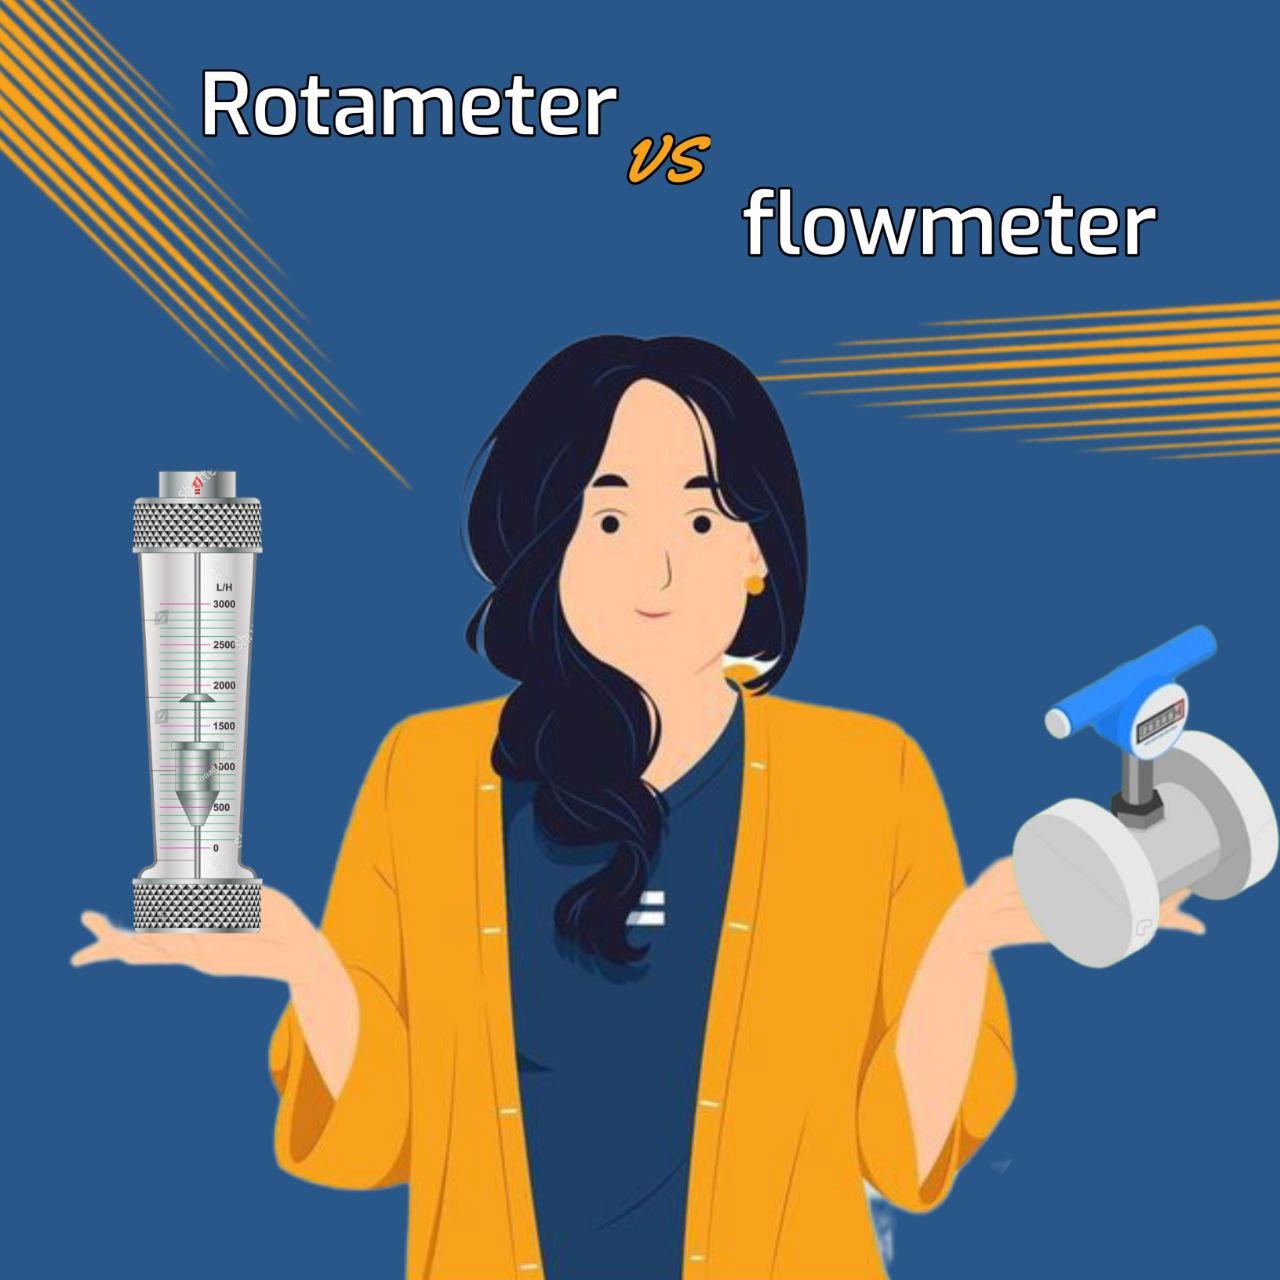 روتامتر چیست و چه تفاوتی با فلومتر دارد؟